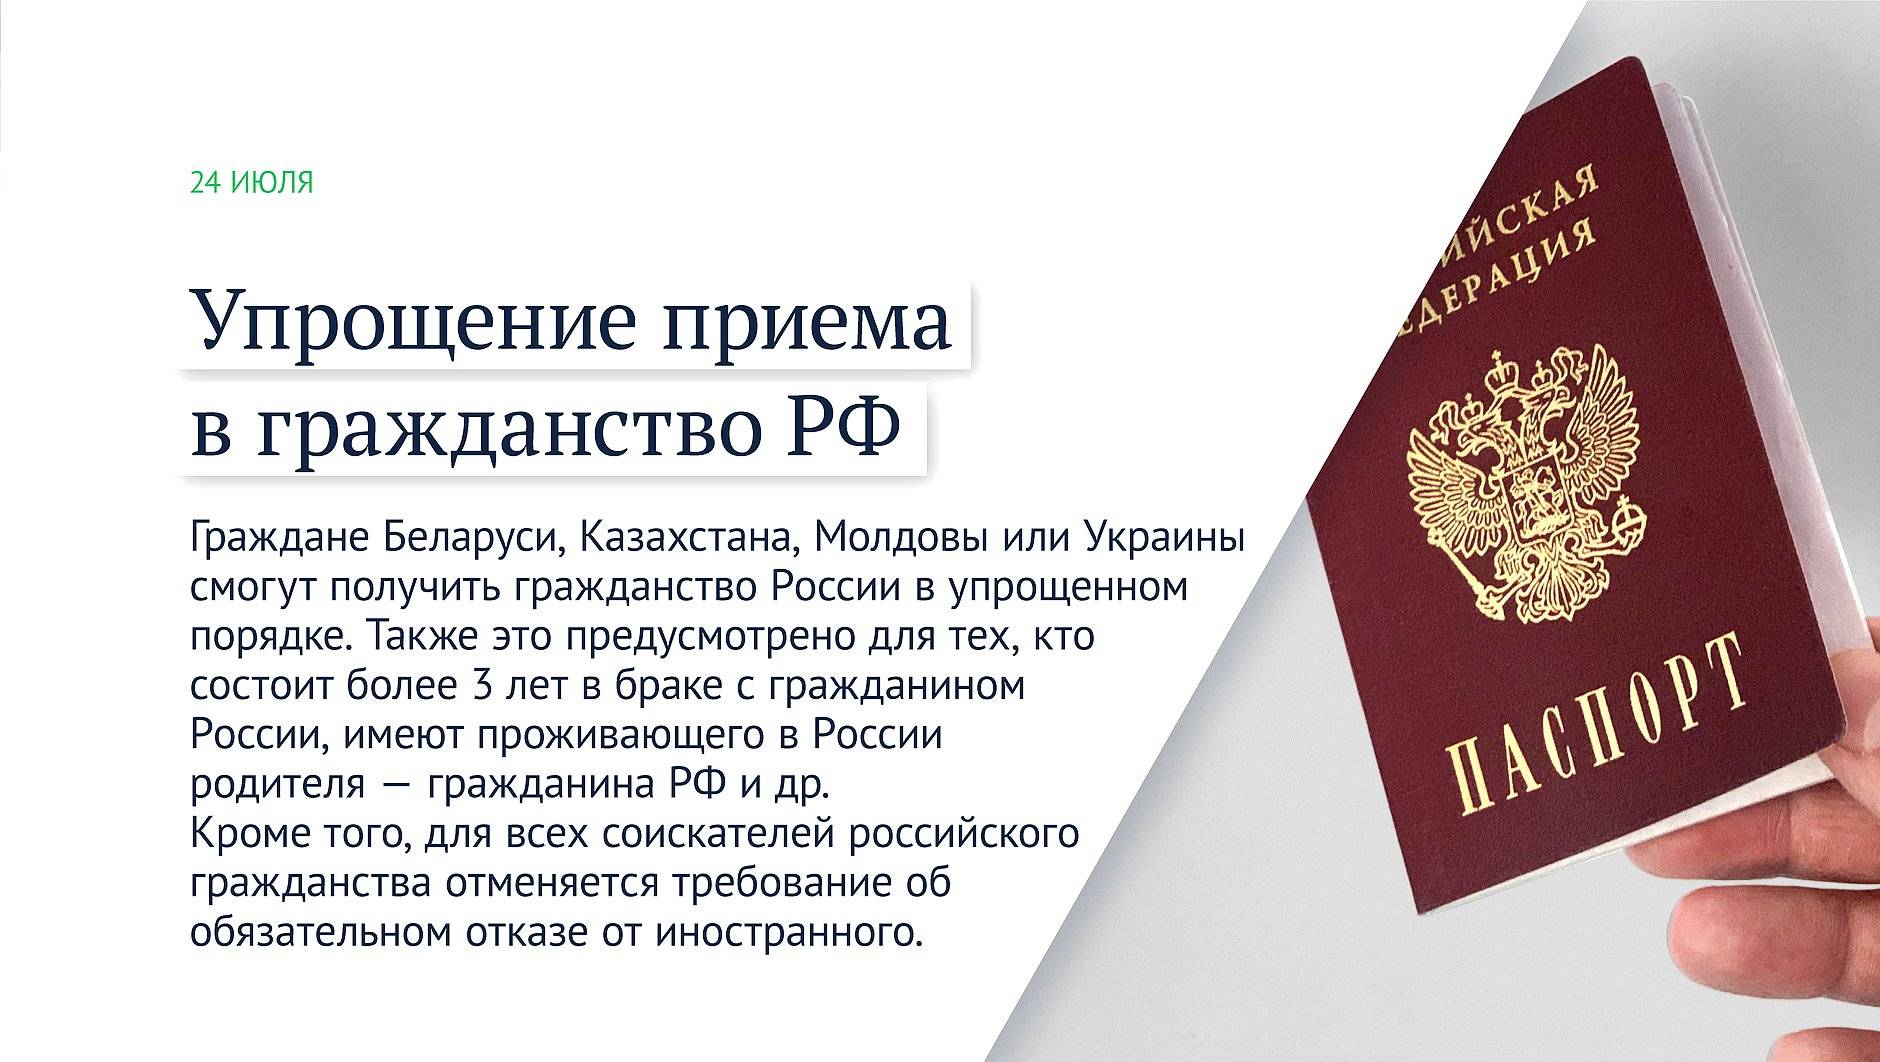 Как получить гражданство рф гражданину украины в 2023 году - упрощённо
как получить гражданство рф гражданину украины в 2023 году - упрощённо